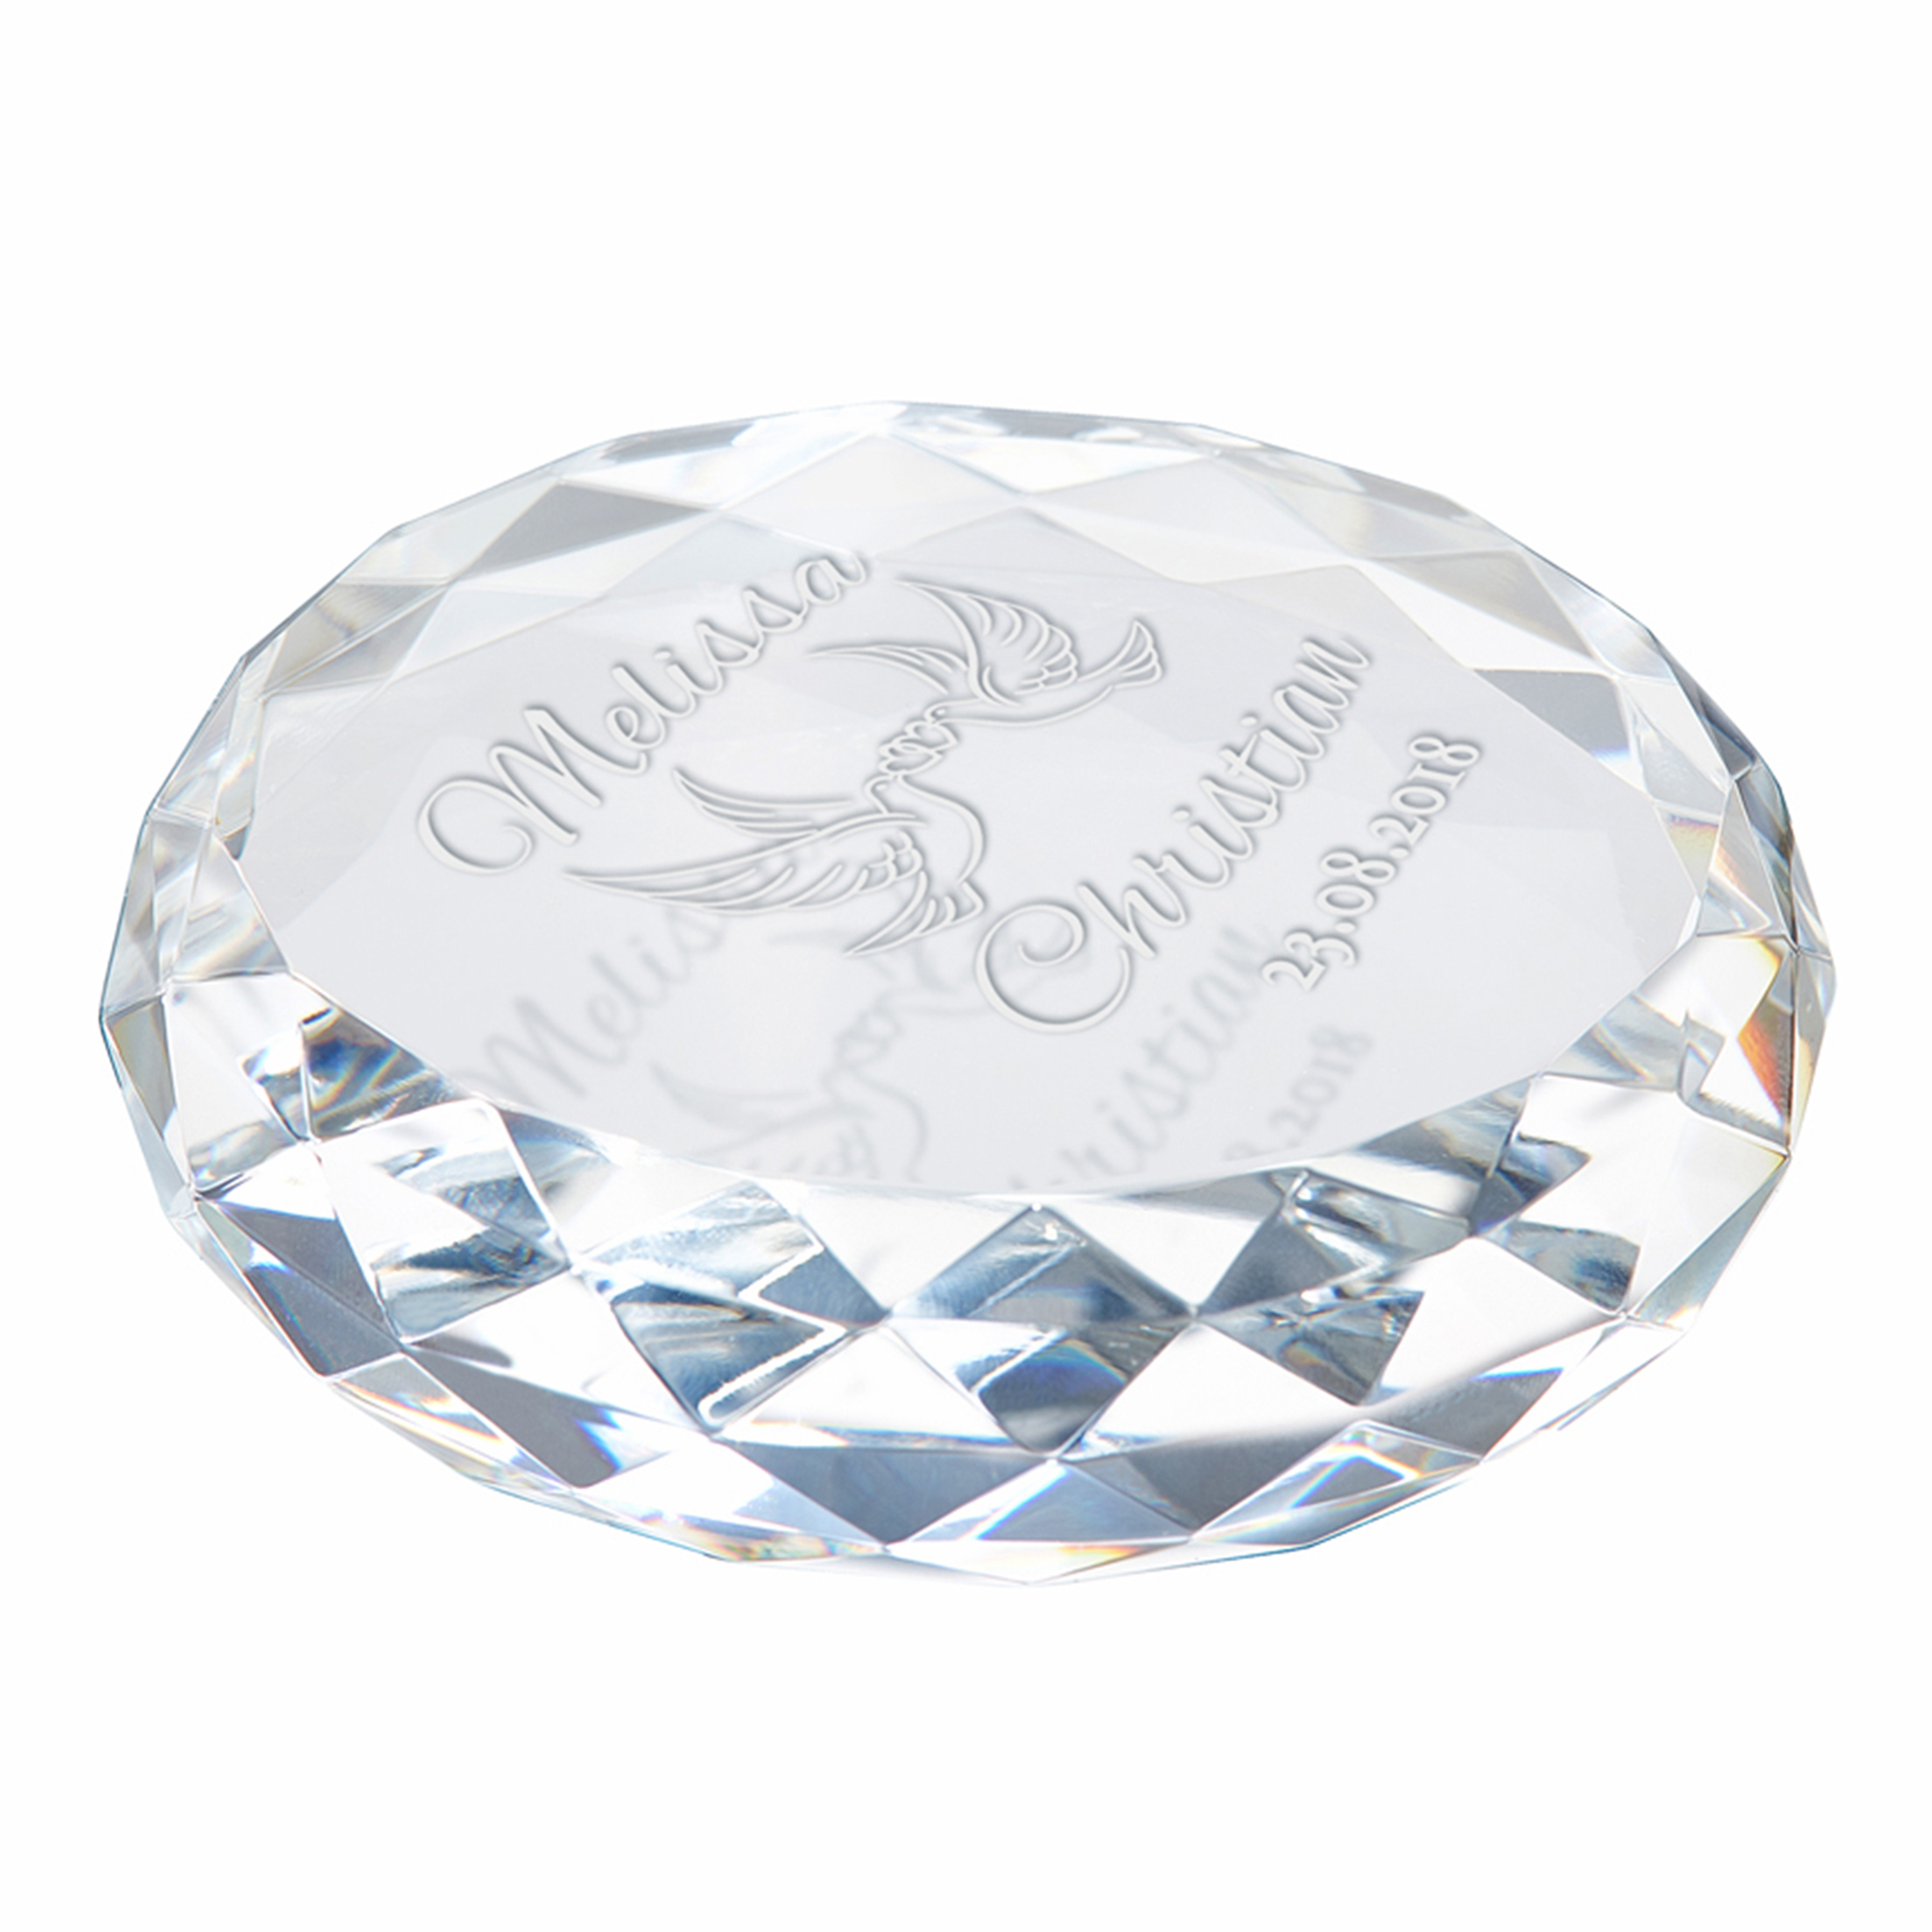 Kristall mit Gravur zur Hochzeit - Liebestauben 4167 - 4